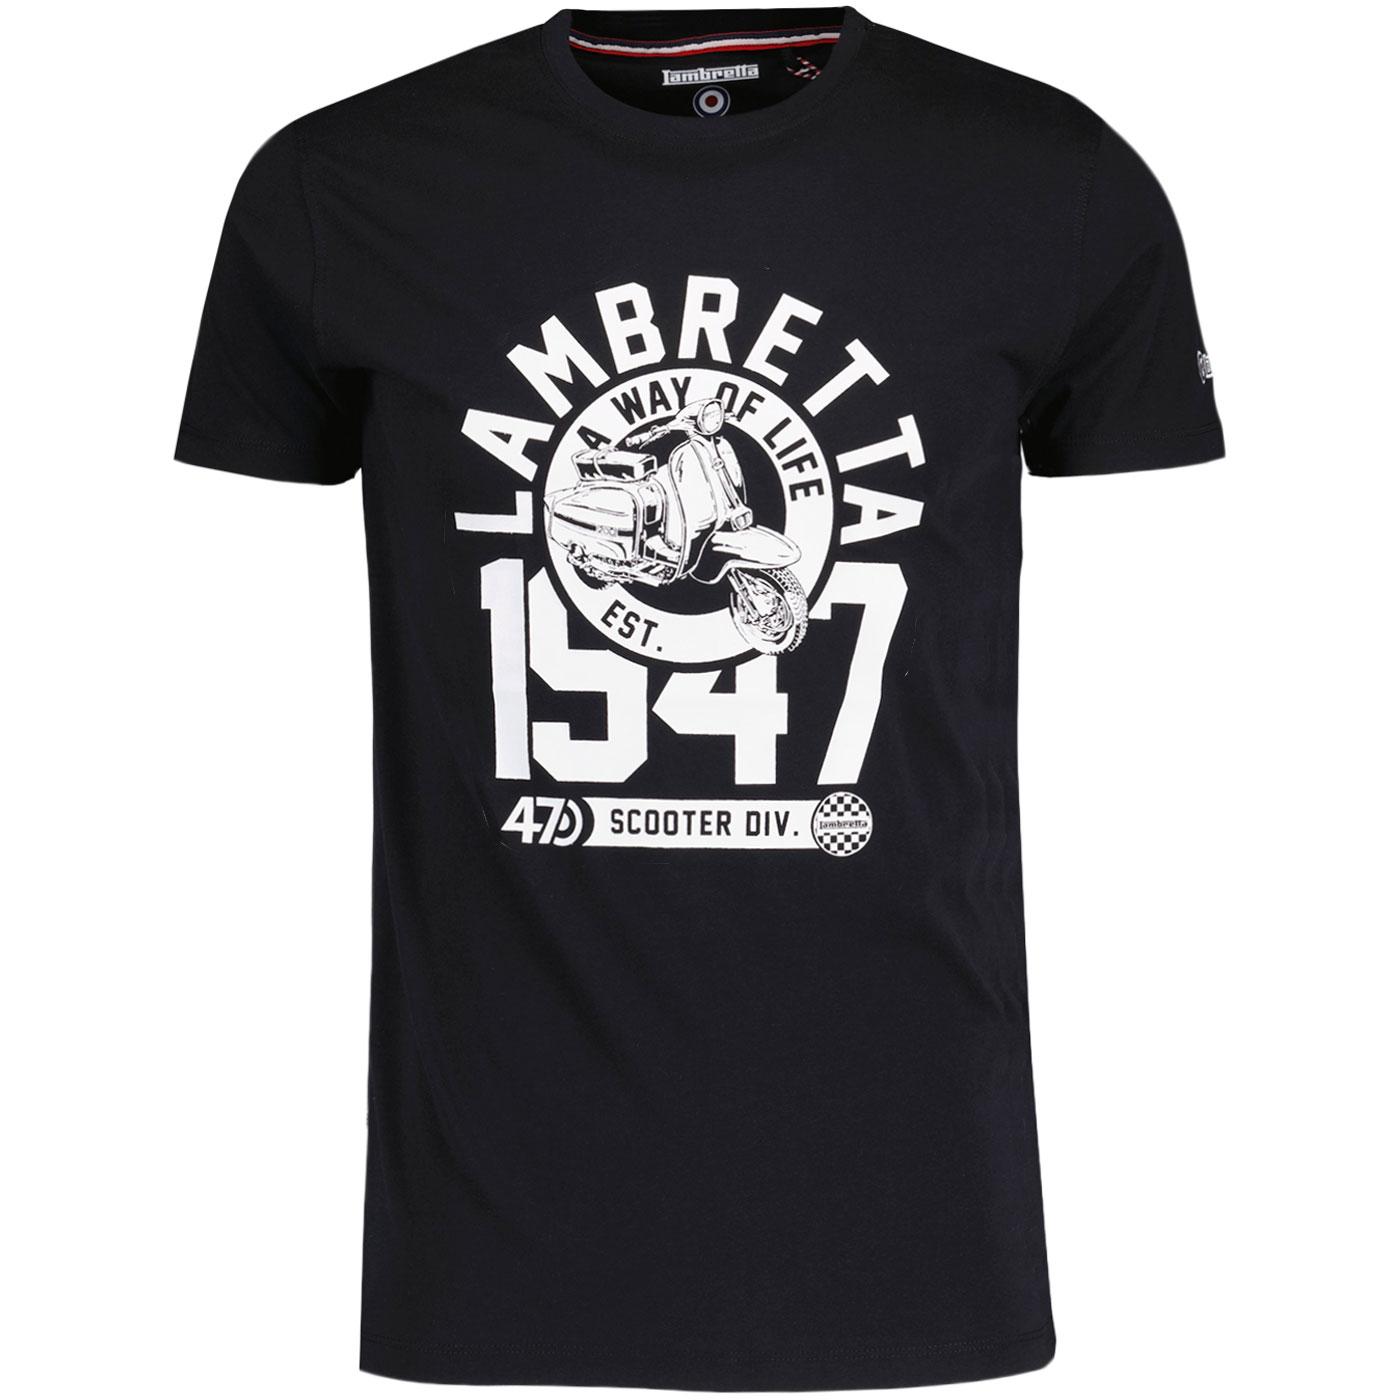 Lambretta Retro Mod A Way Of Life 1947 T-shirt